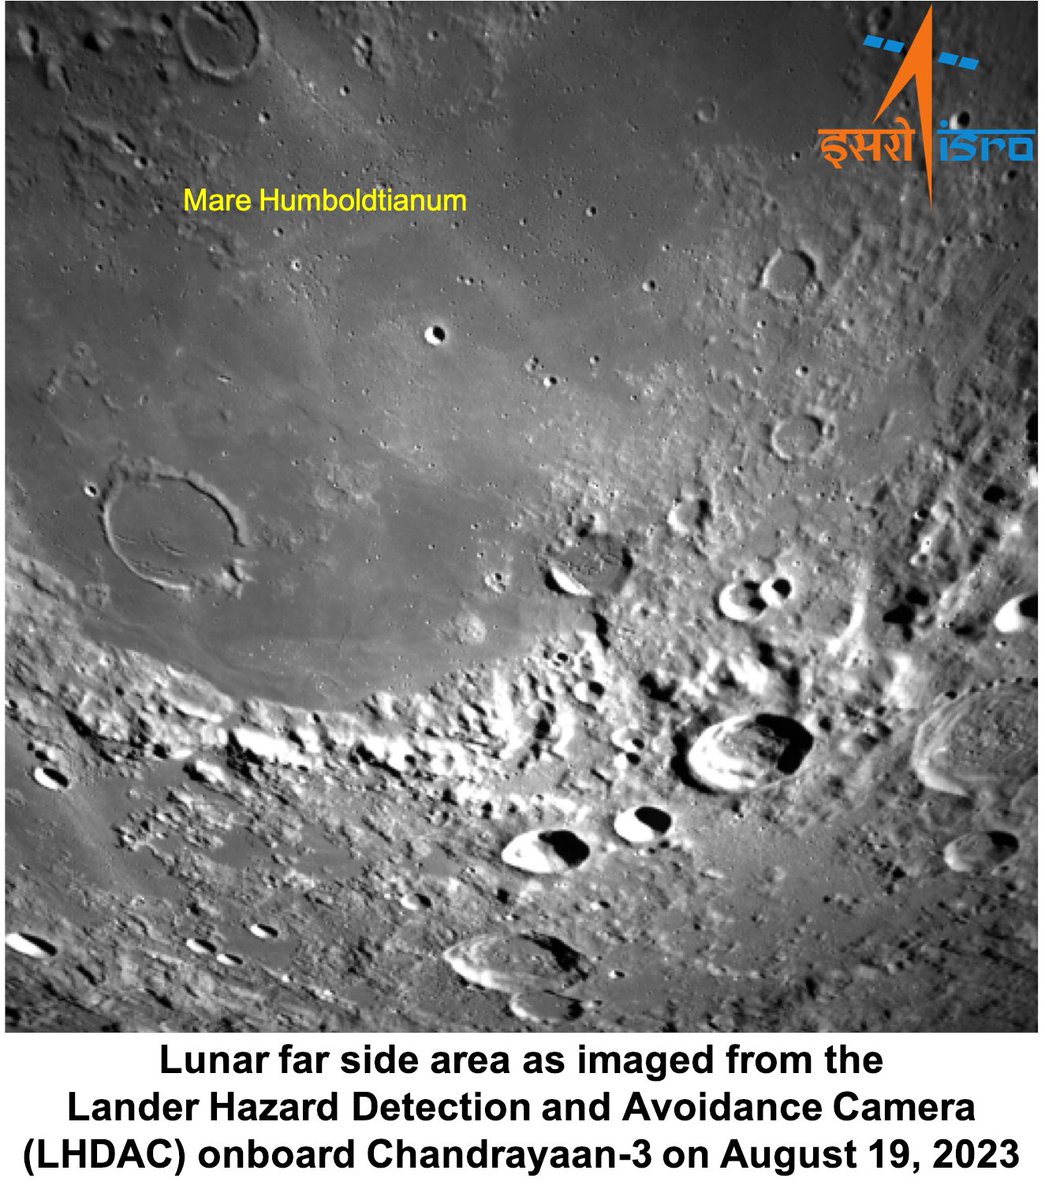 चंद्रयान-3 के विक्रम लैंडर ने लीं चांद के सुदूर भाग की नई तस्वीरें